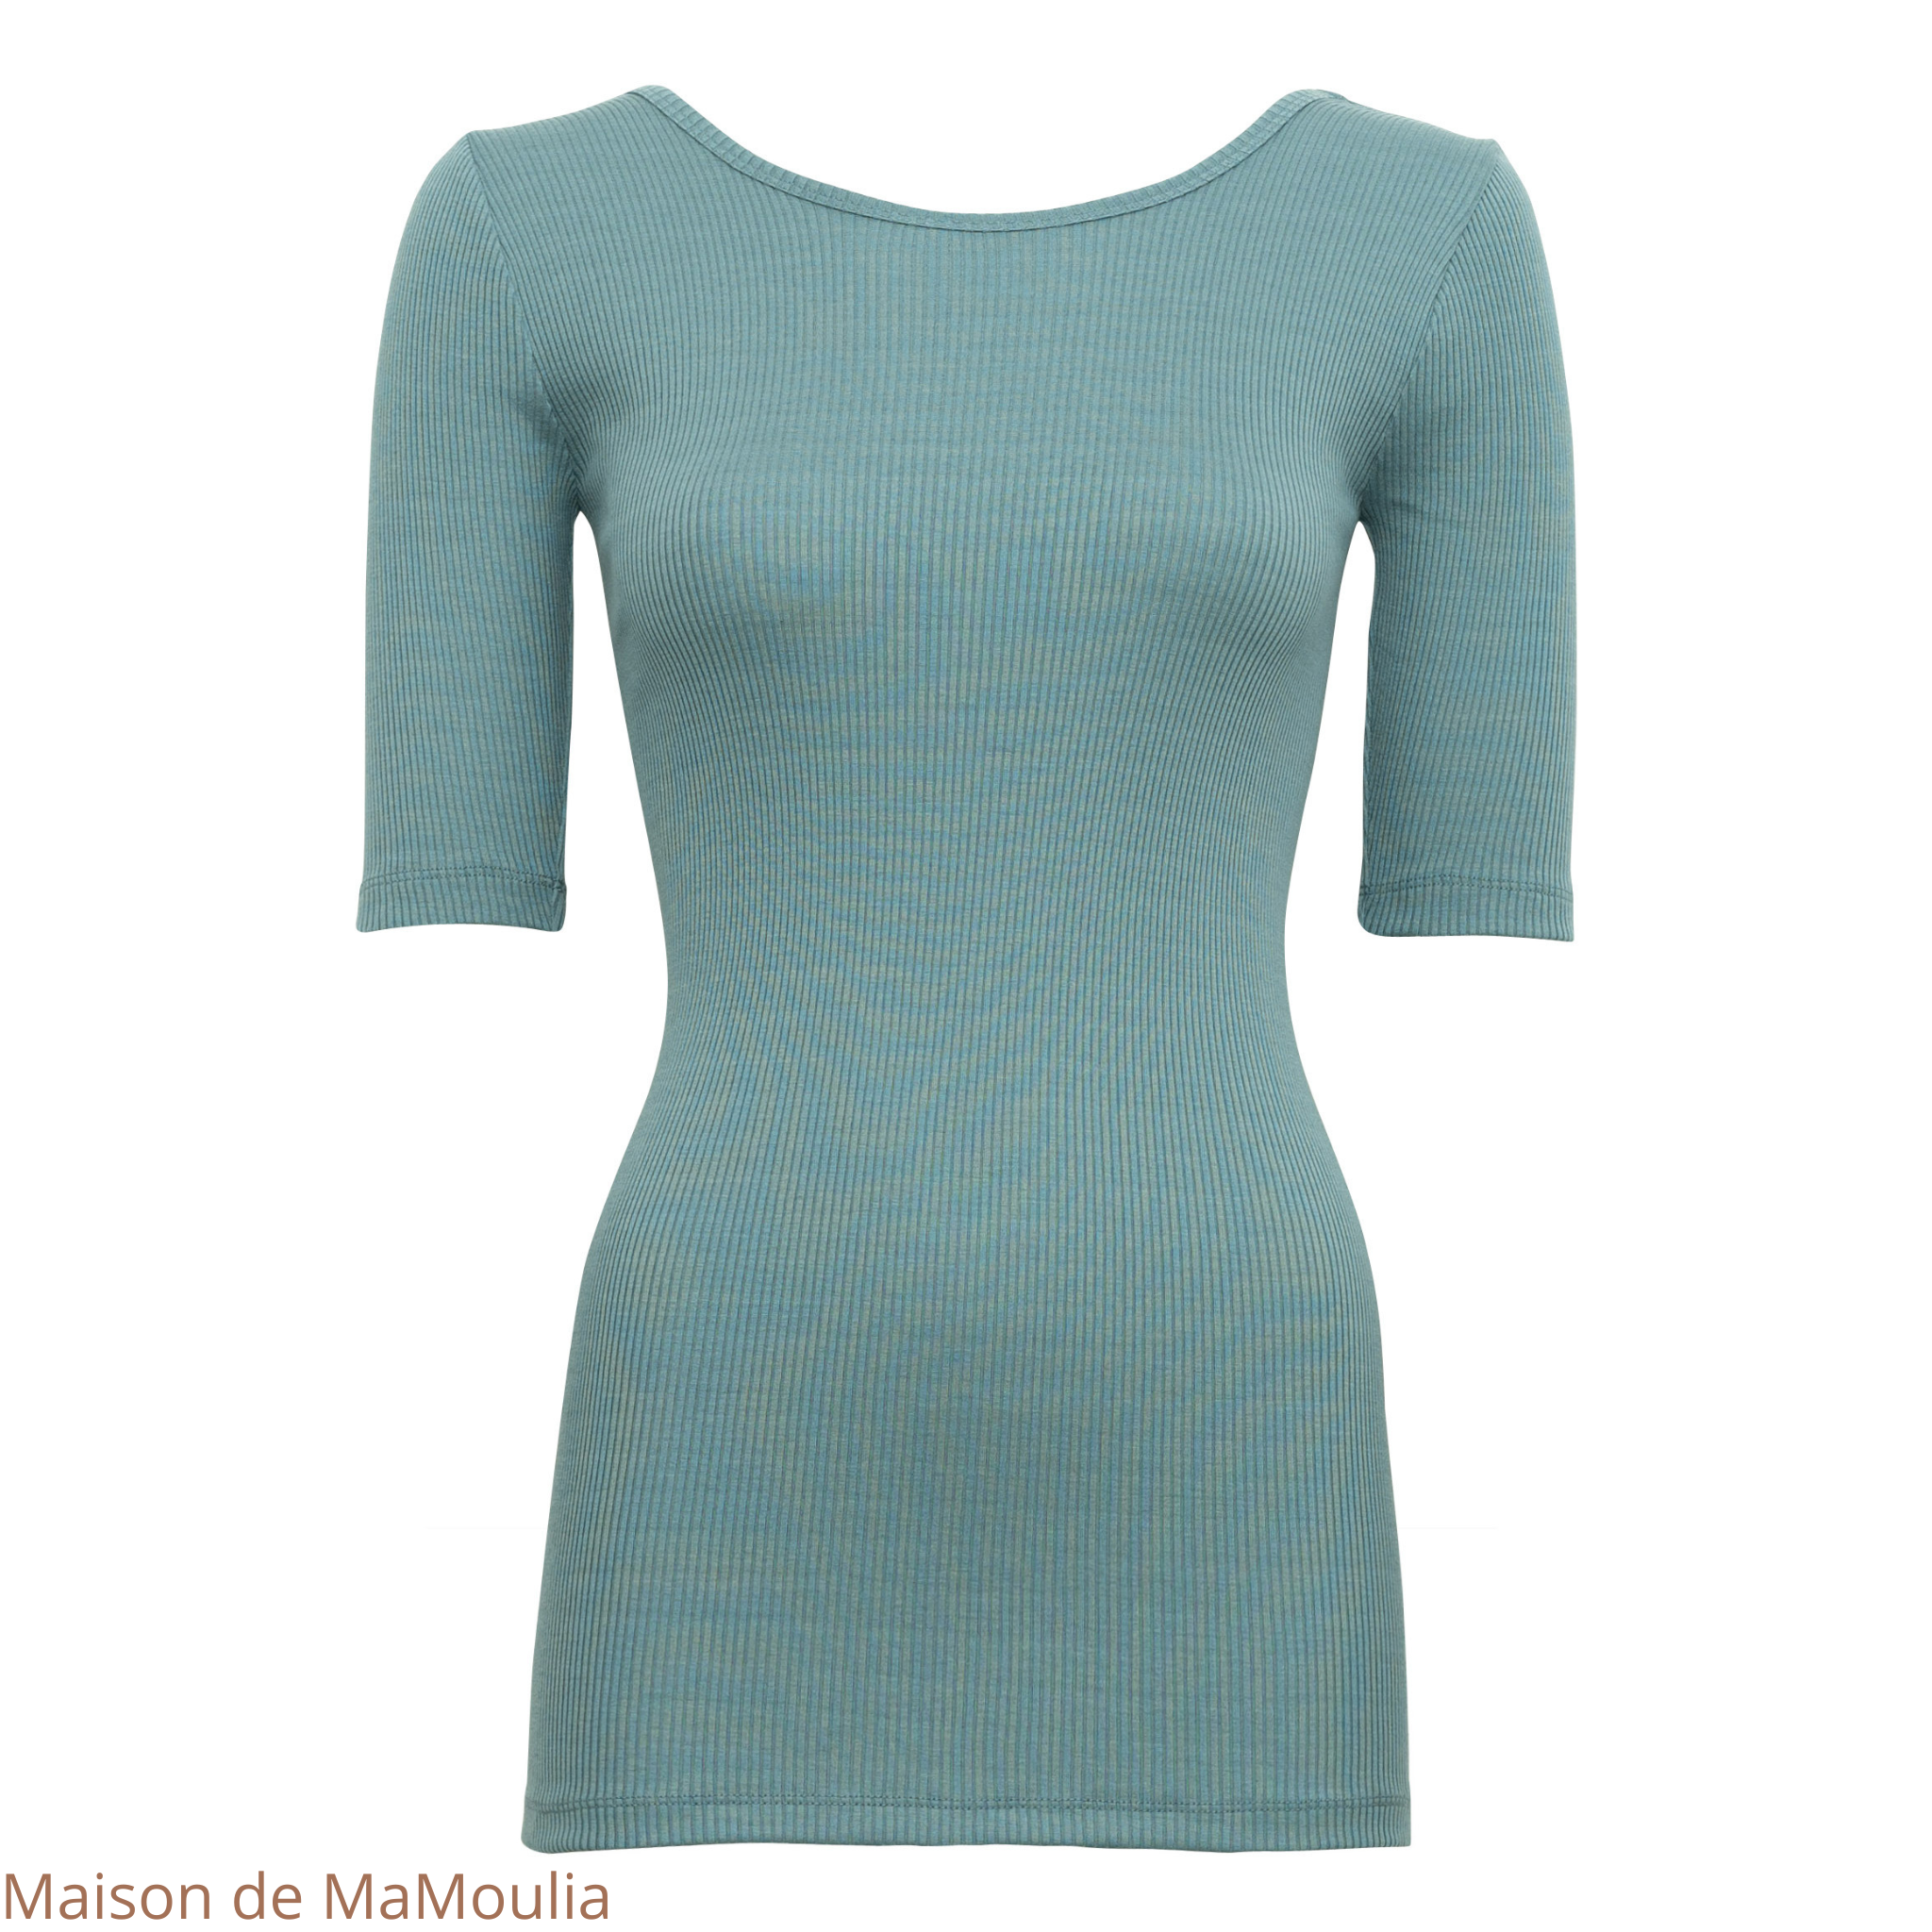 minimalisma-gym- tshirt-top-manches-courtes-34-soie-coton-femme-maison-de-mamoulia -northern-lights- bleu-turquoise